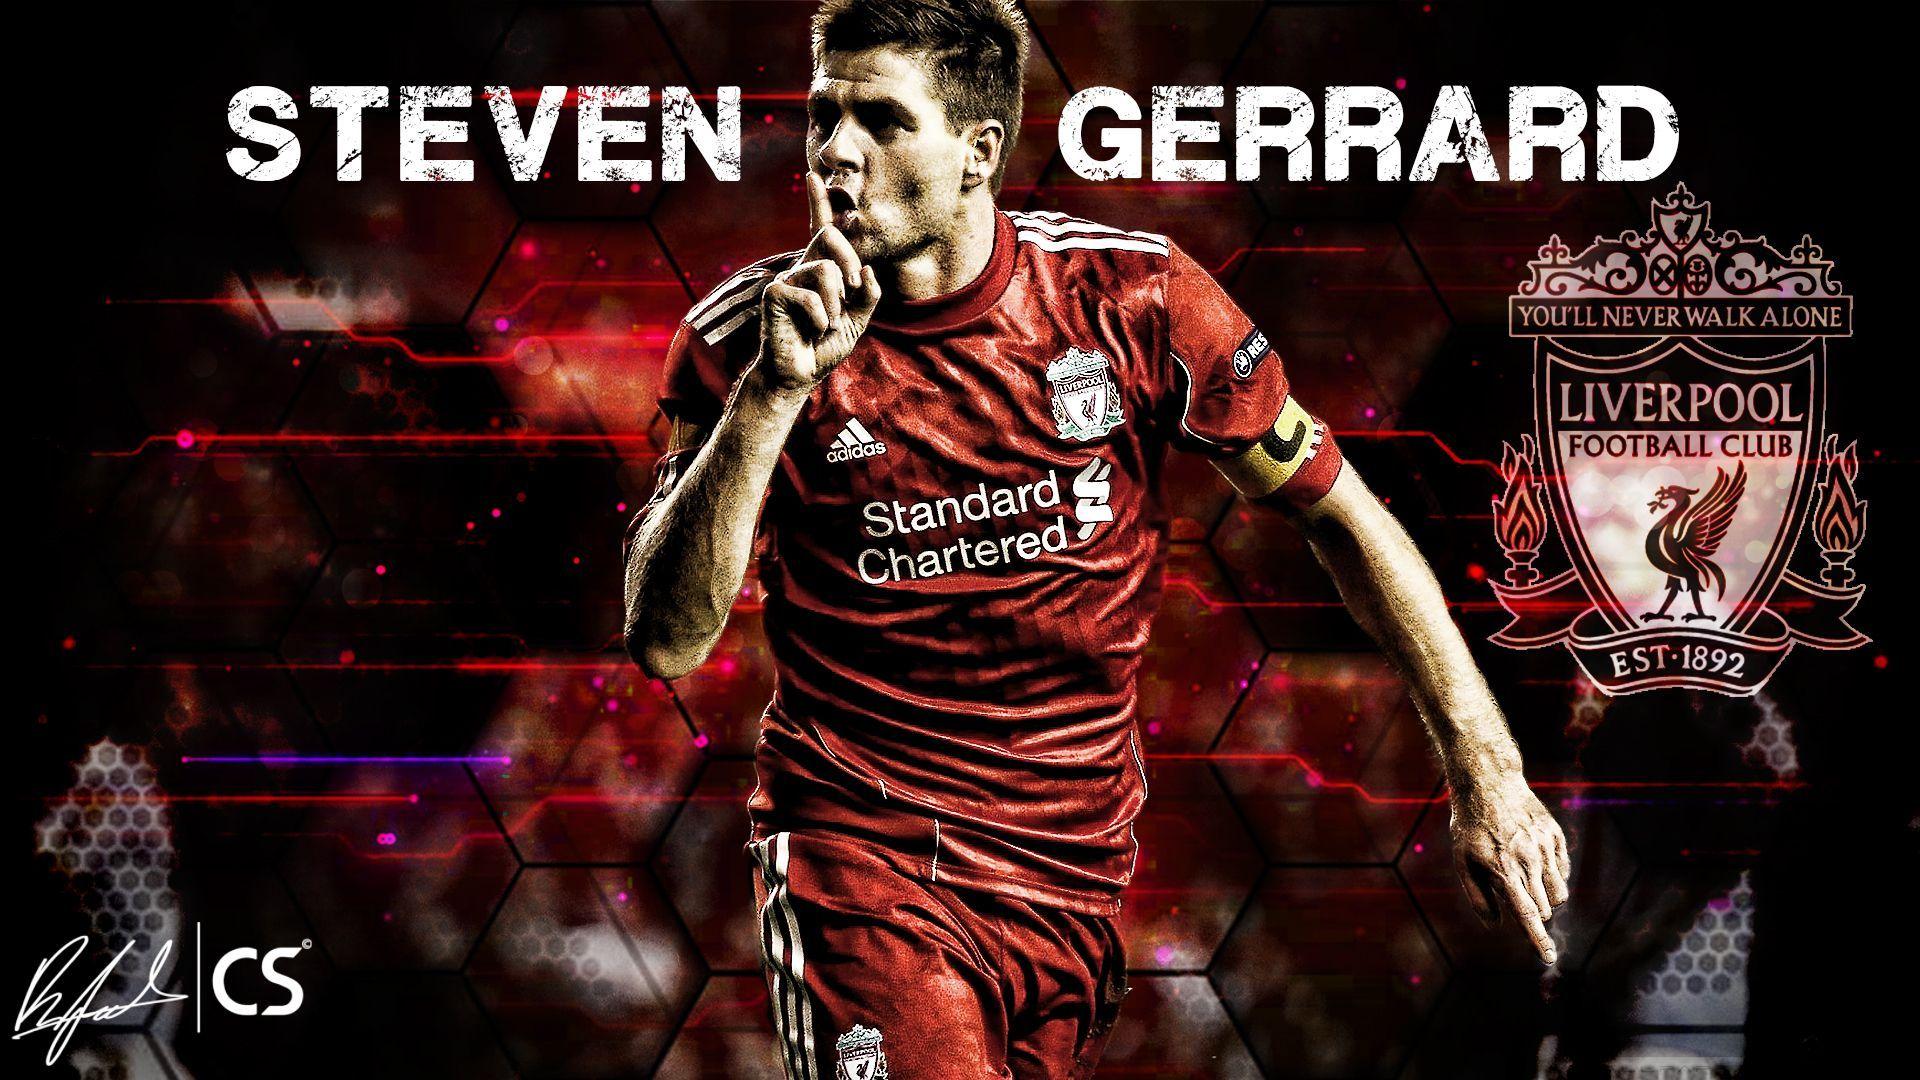 Steven Gerrard Wallpapers Top Free Steven Gerrard Backgrounds Wallpaperaccess